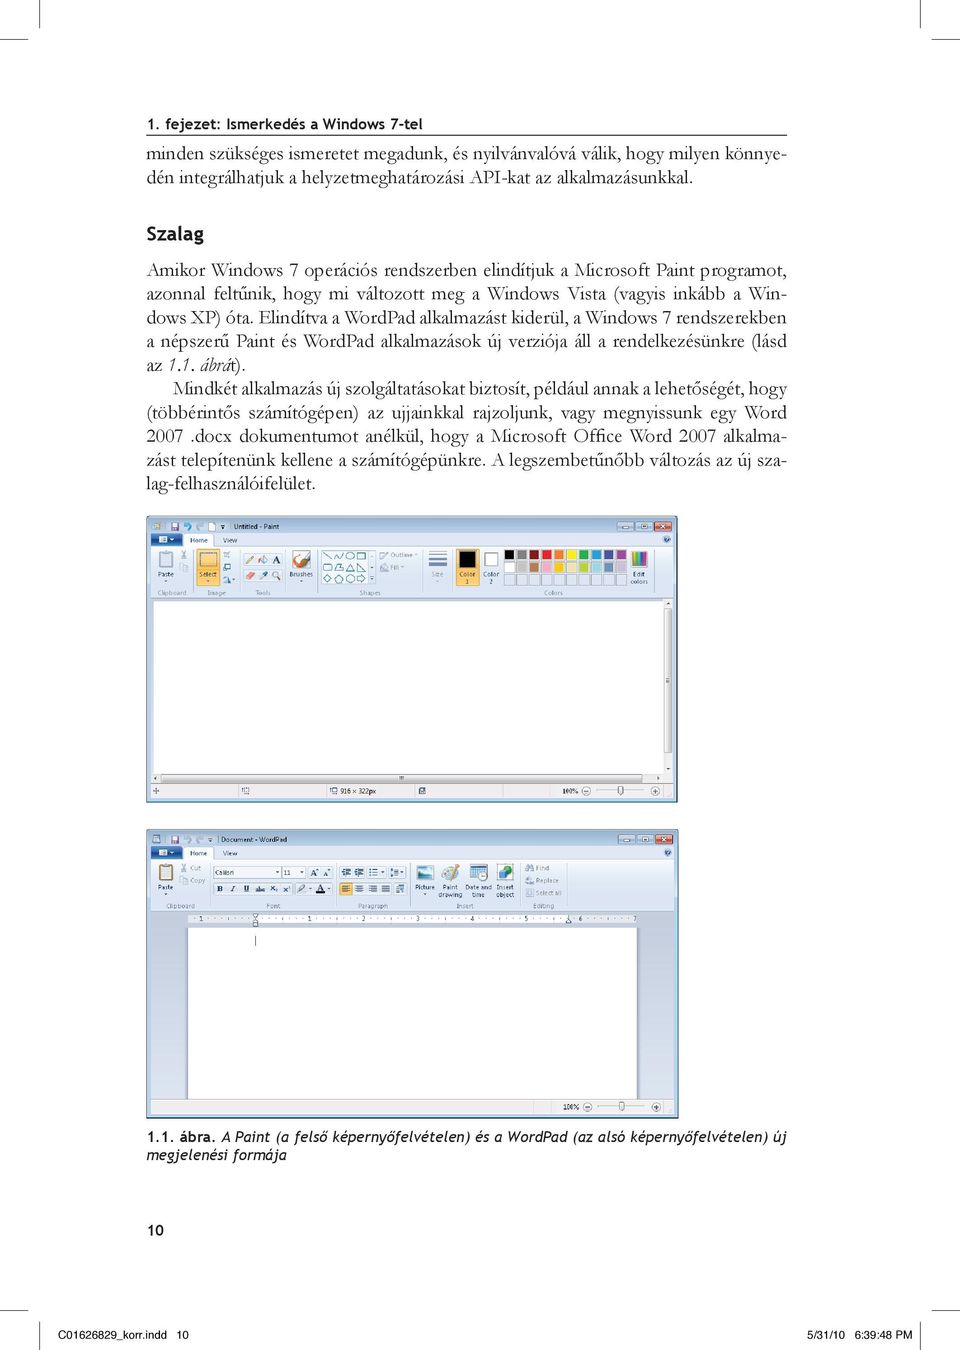 Elindítva a WordPad alkalmazást kiderül, a Windows 7 rendszerekben a népszerű Paint és WordPad alkalmazások új verziója áll a rendelkezésünkre (lásd az 1.1. ábrát).